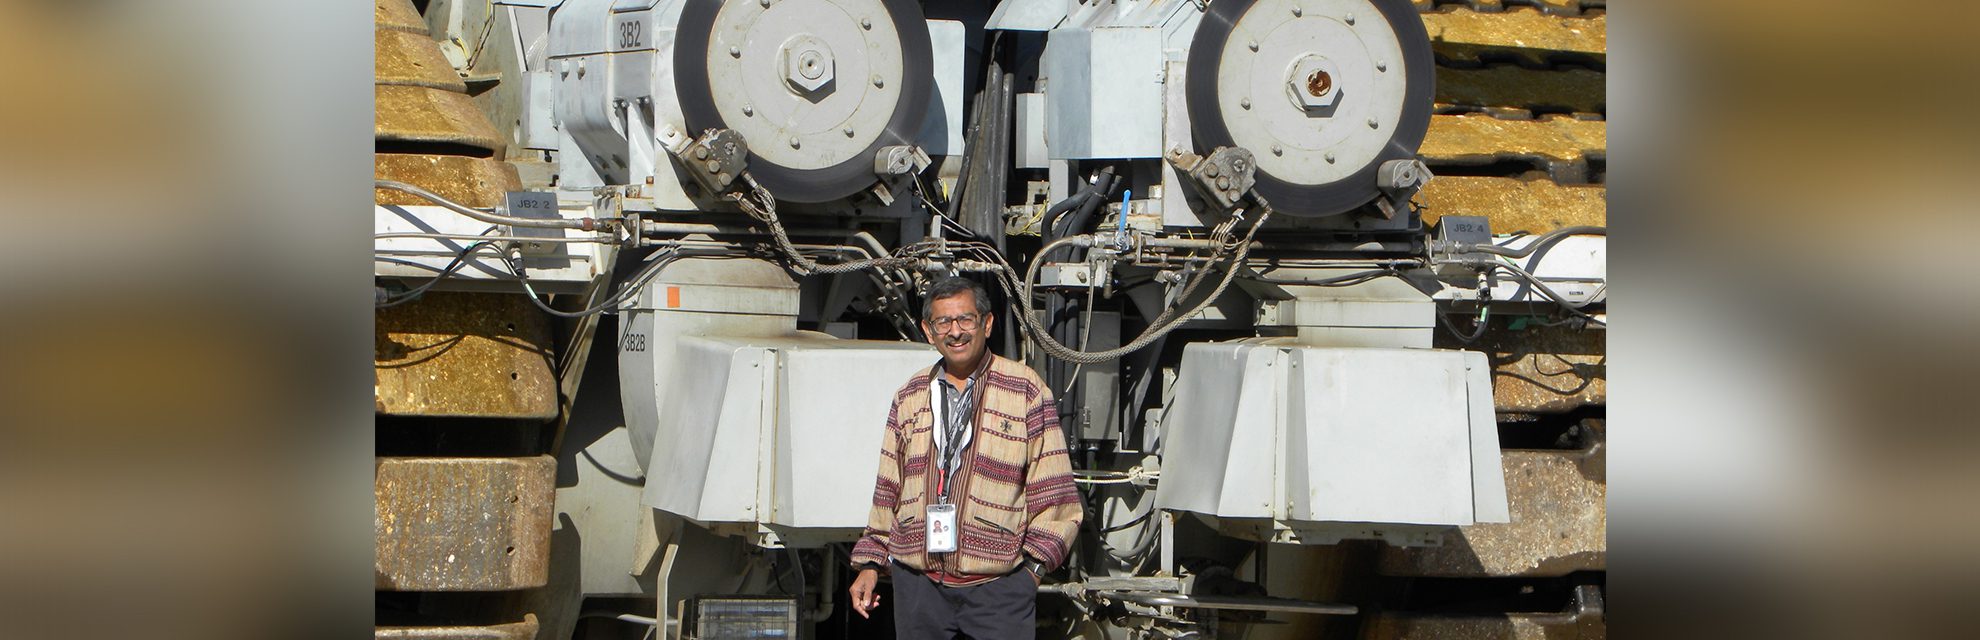 अंतरिक्ष यात्री निर्माता: डॉ. रवि मार्गसहायम, वह व्यक्ति जिसने 700 से अधिक मनुष्यों को अंतरिक्ष में भेजा